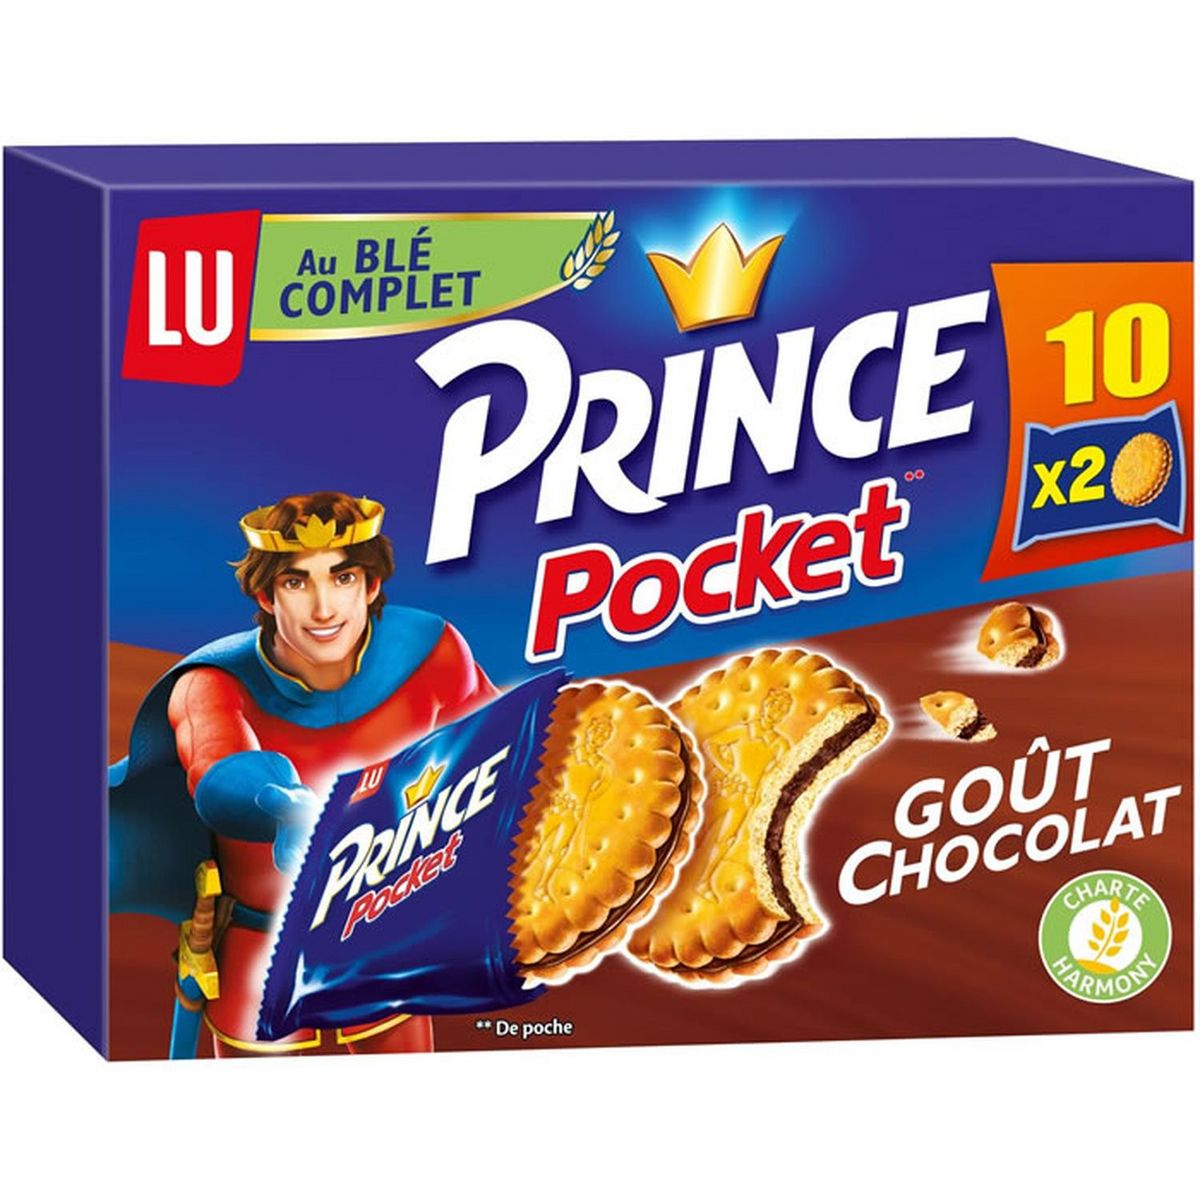 PRINCE Pocket biscuits au blé complet fourrés au chocolat, sachets fraîcheur 10x2 biscuits 400g